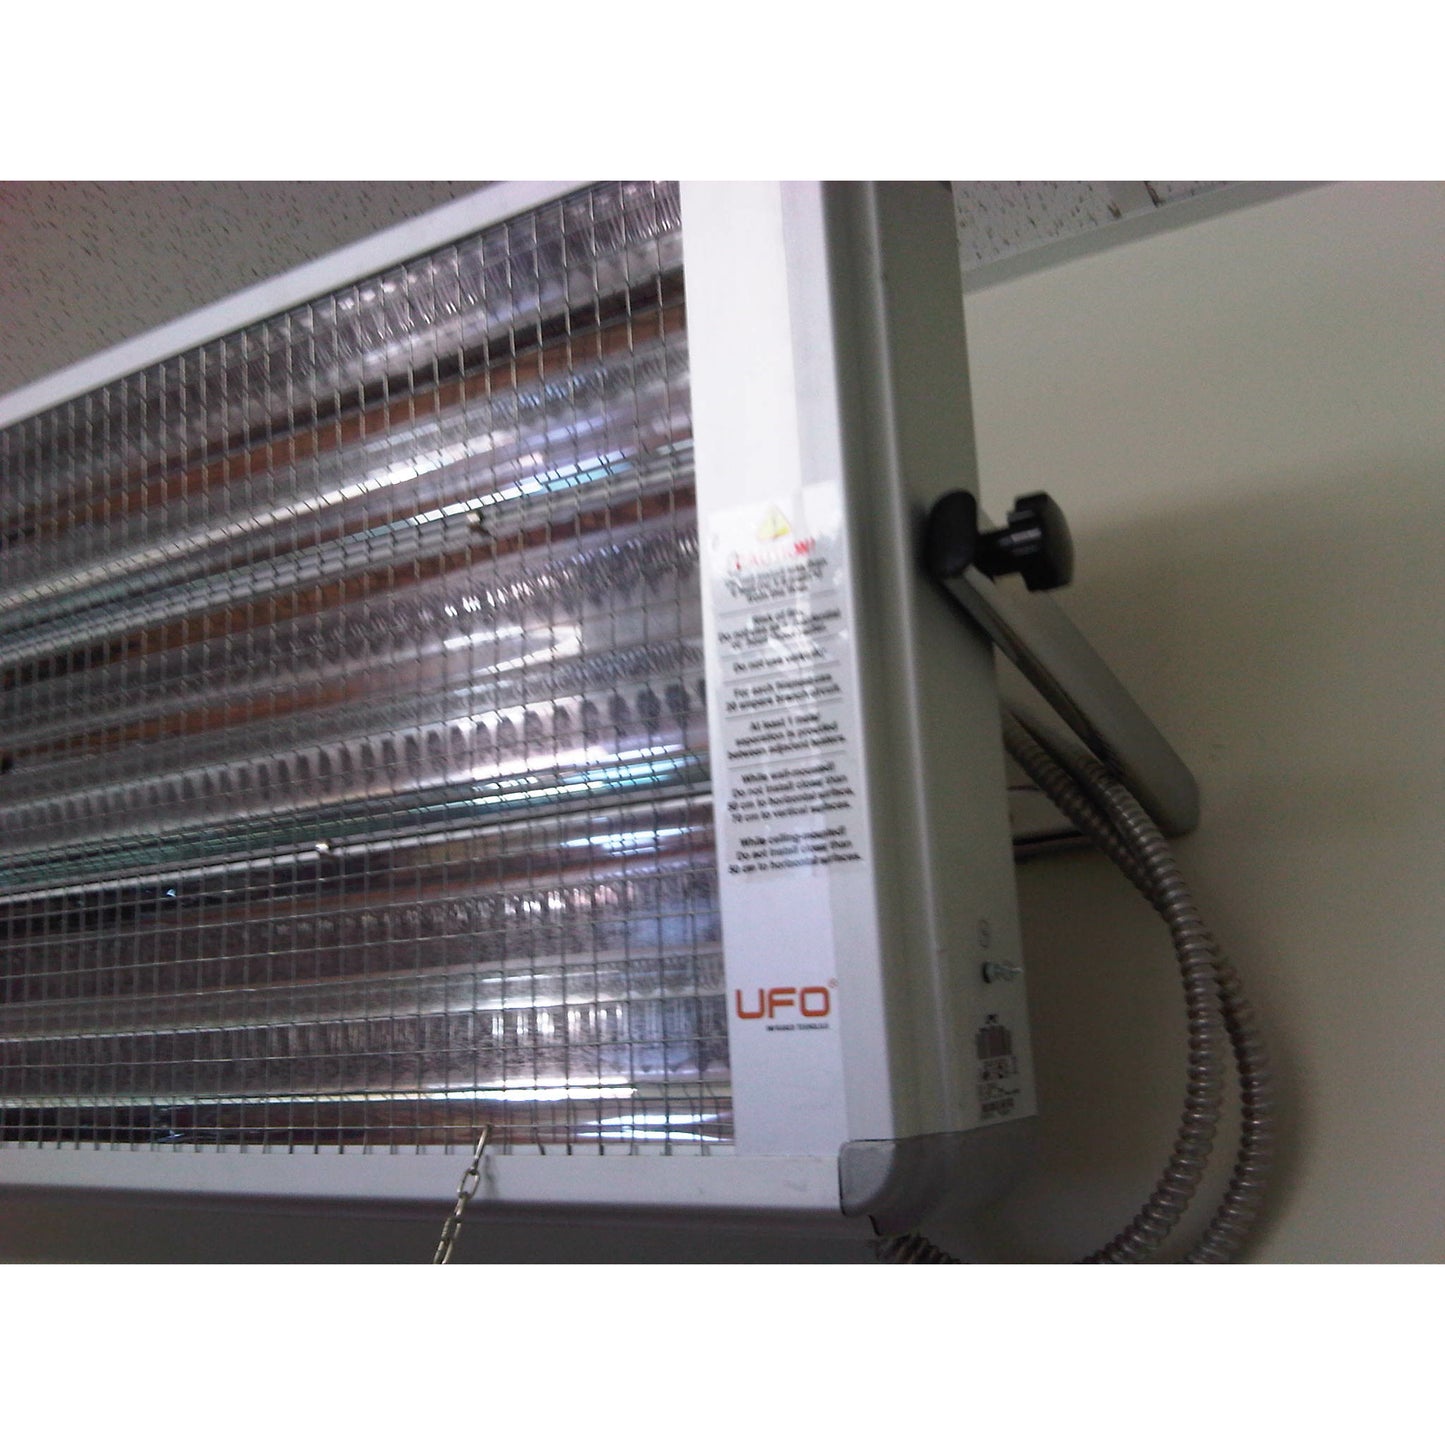 Industrial Heater 5400 Watt 230-V Heater